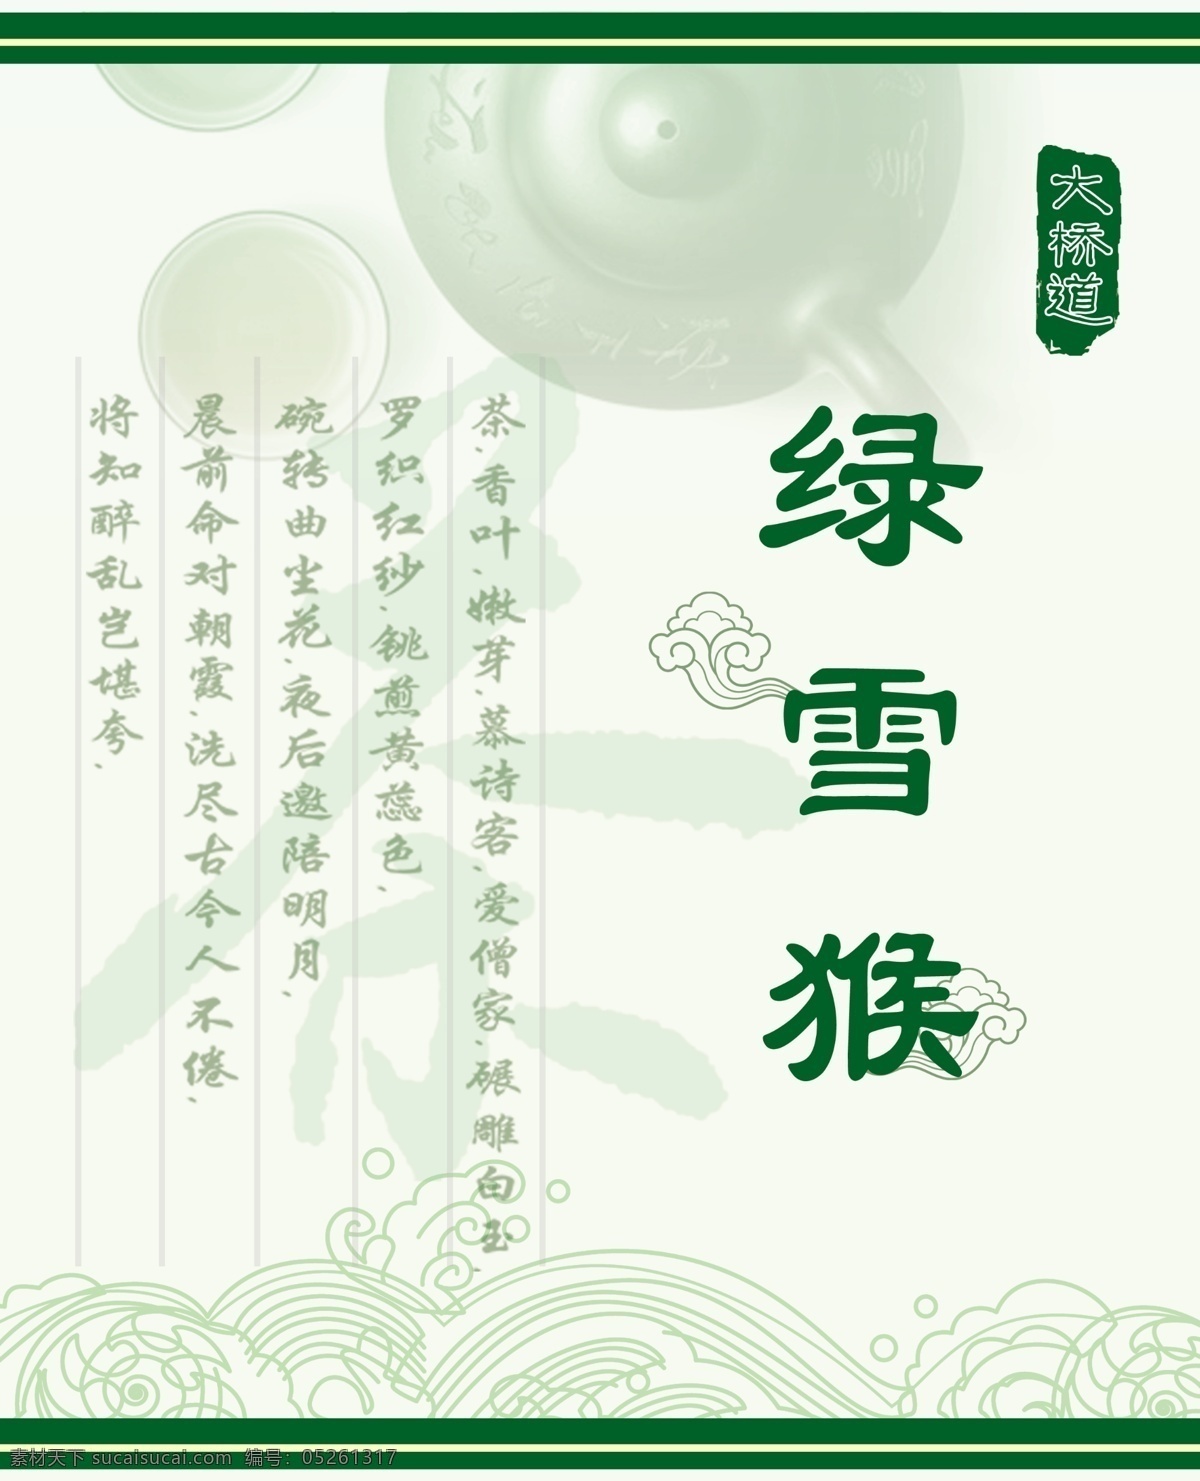 茶叶标签 茶书法字 茶杯 茶碗 祥云 波纹 传统原素 包装设计 广告设计模板 源文件